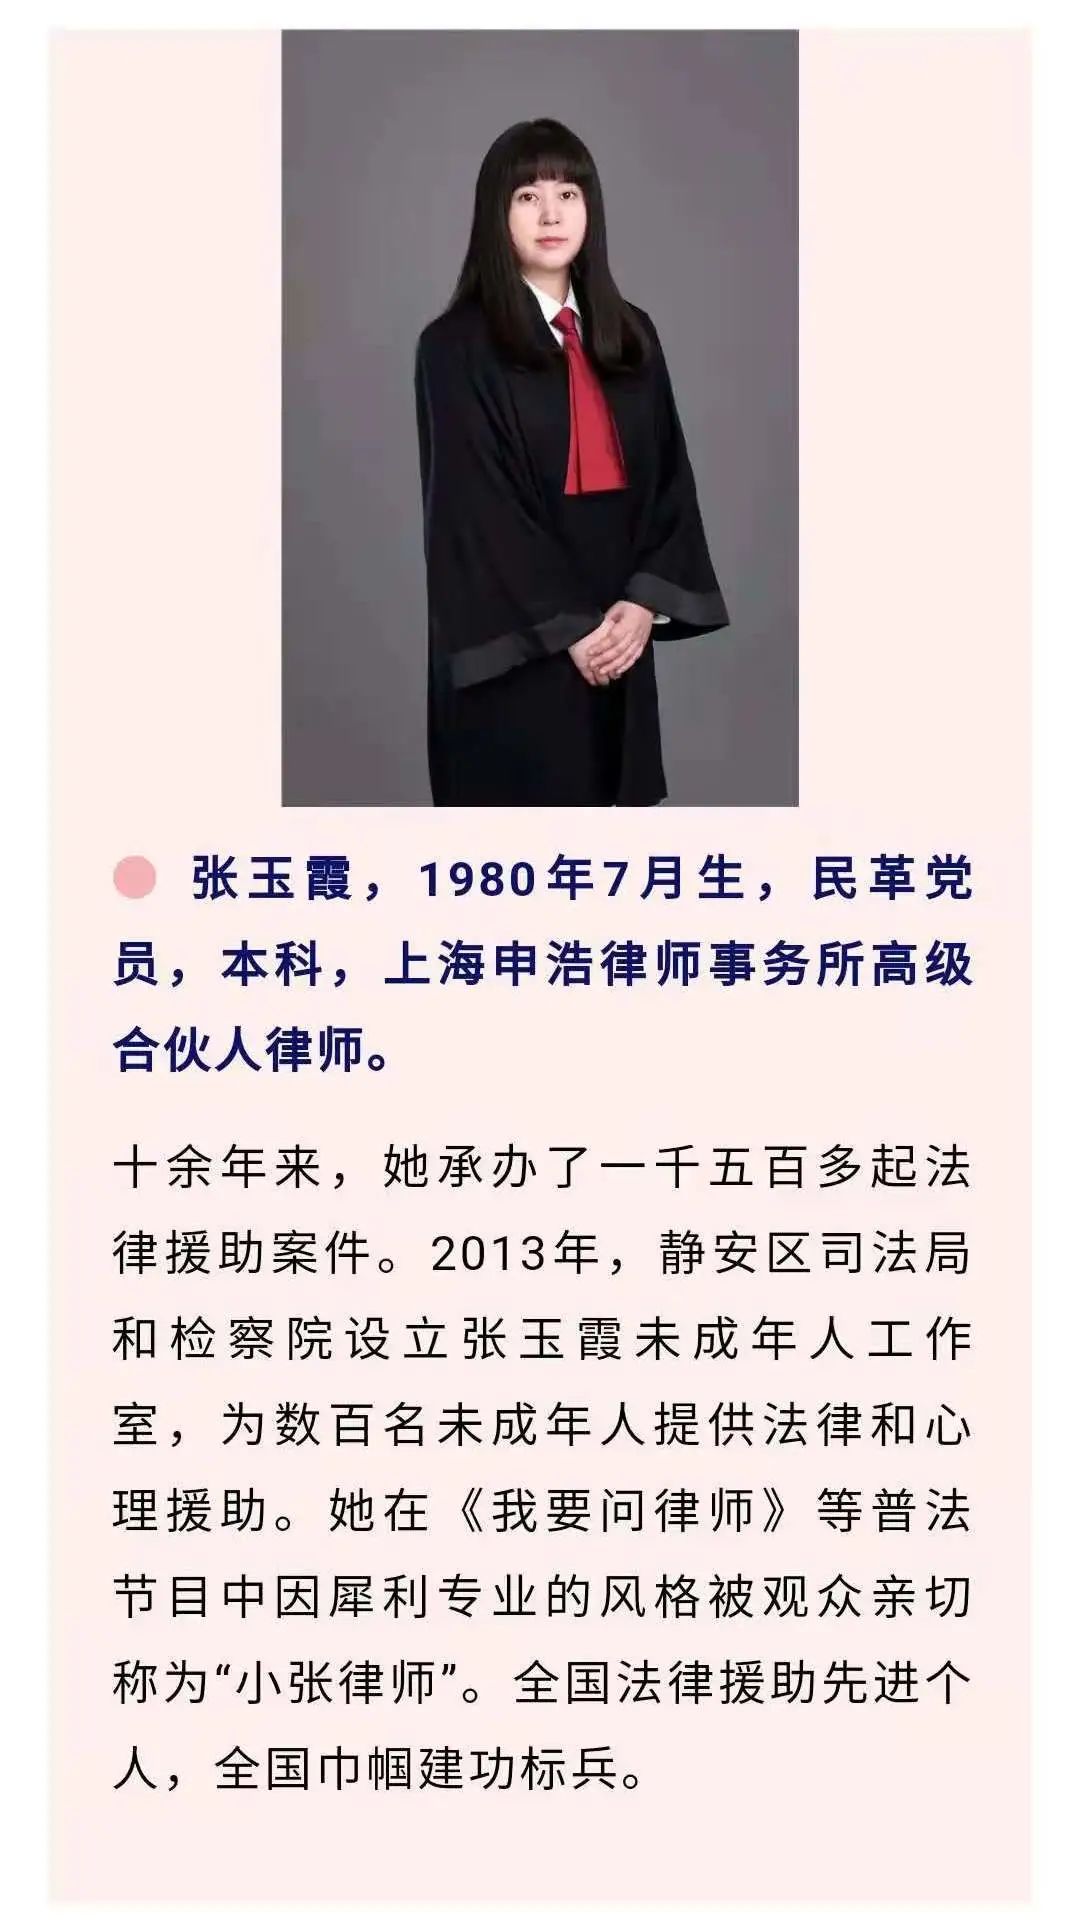 人物风采张玉霞是上海申浩律师事务所的一名高级合伙人律师,原本已具